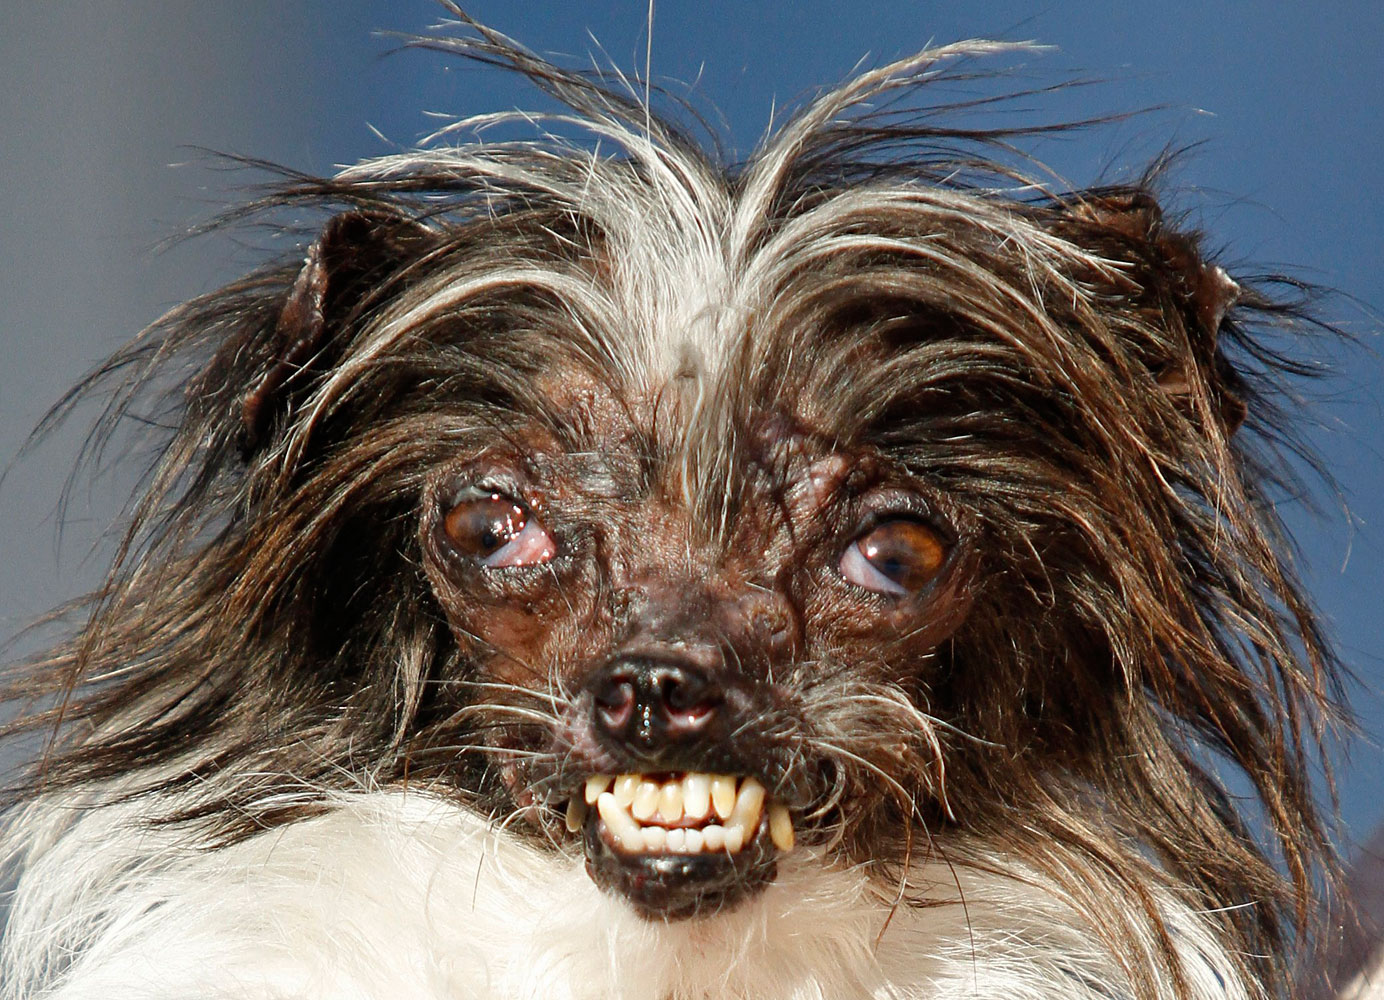 APTOPIX World's Ugliest Dog